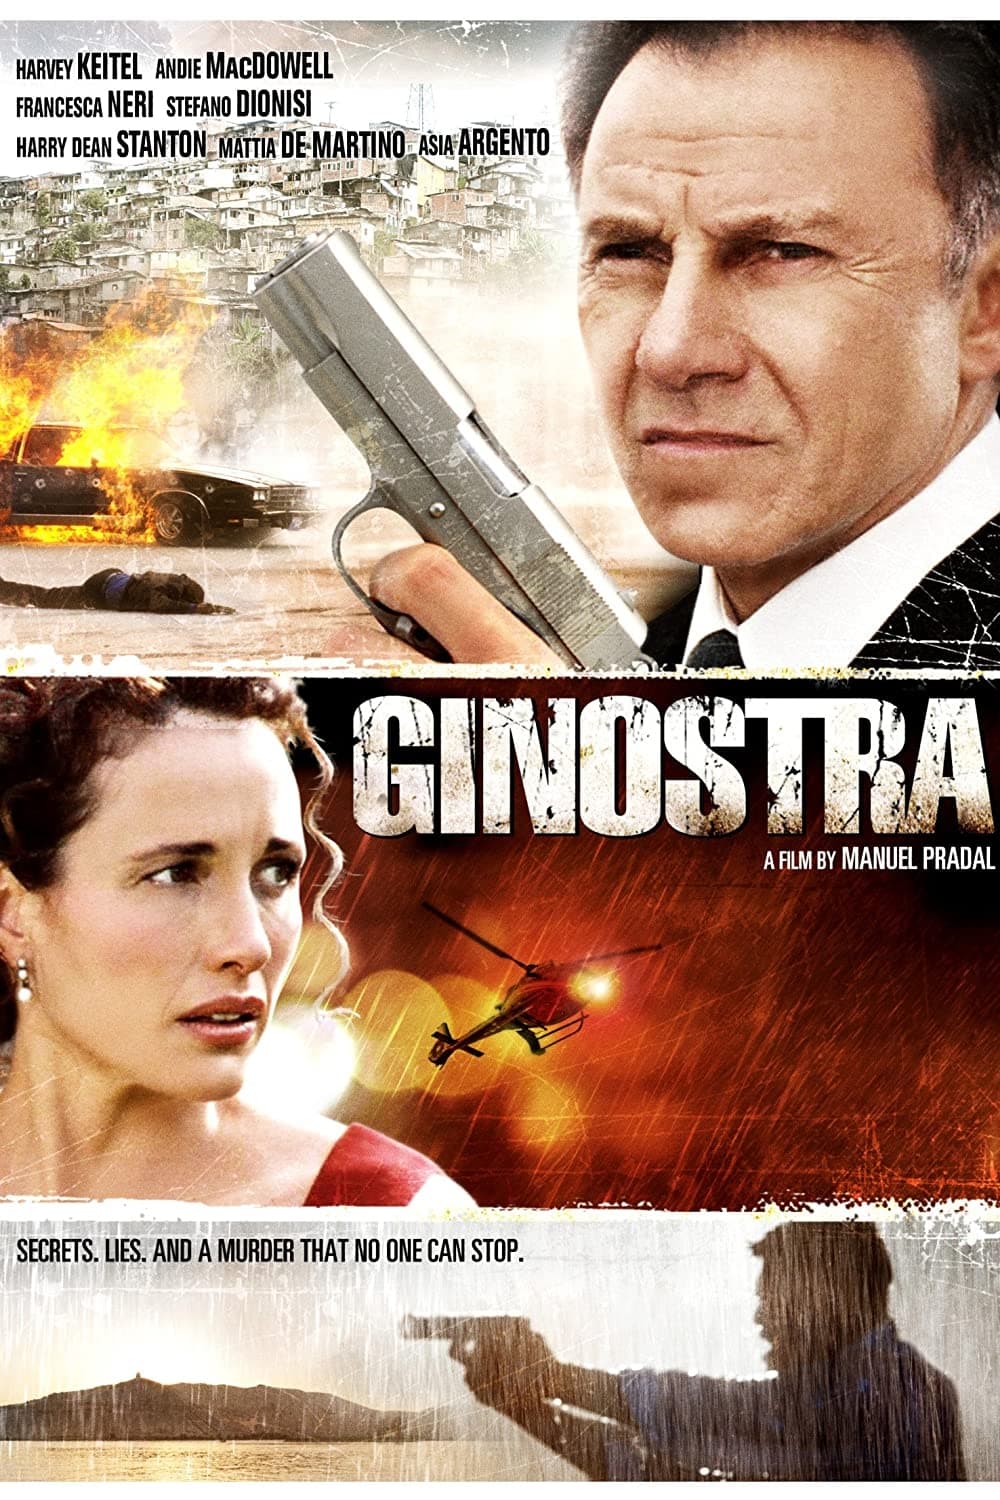 Ginostra (2003)